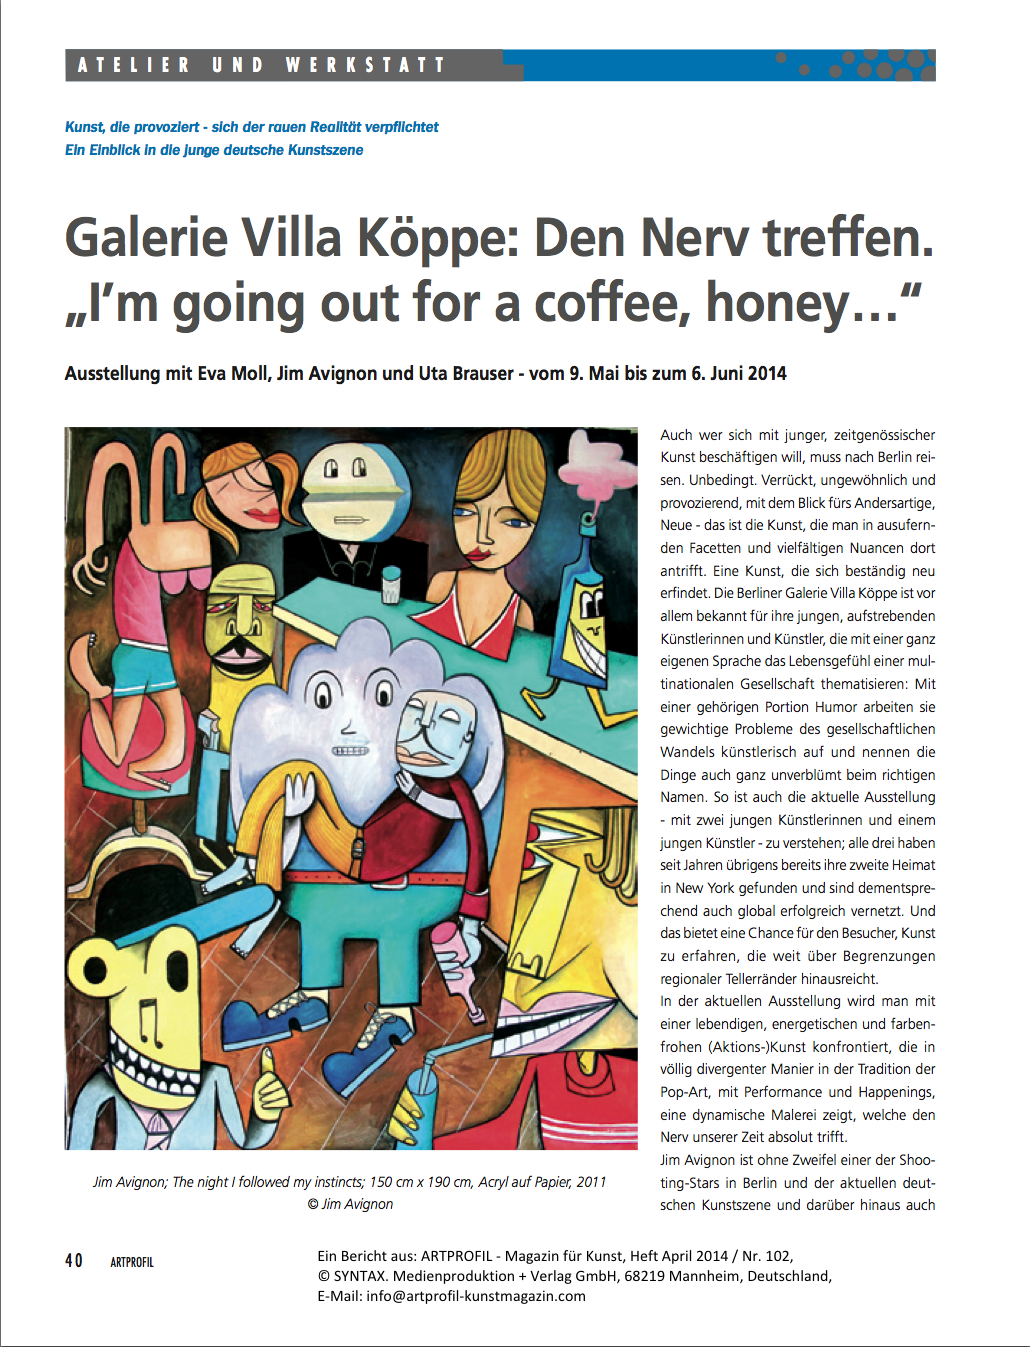 Ein Bericht aus: ARTPROFIL – Magazin für Kunst, Heft April 2014 / Nr. 102,
© SYNTAX. Medienproduktion + Verlag GmbH, 68219 Mannheim, Deutschland,
E-Mail: info@artprofil-kunstmagazin.com